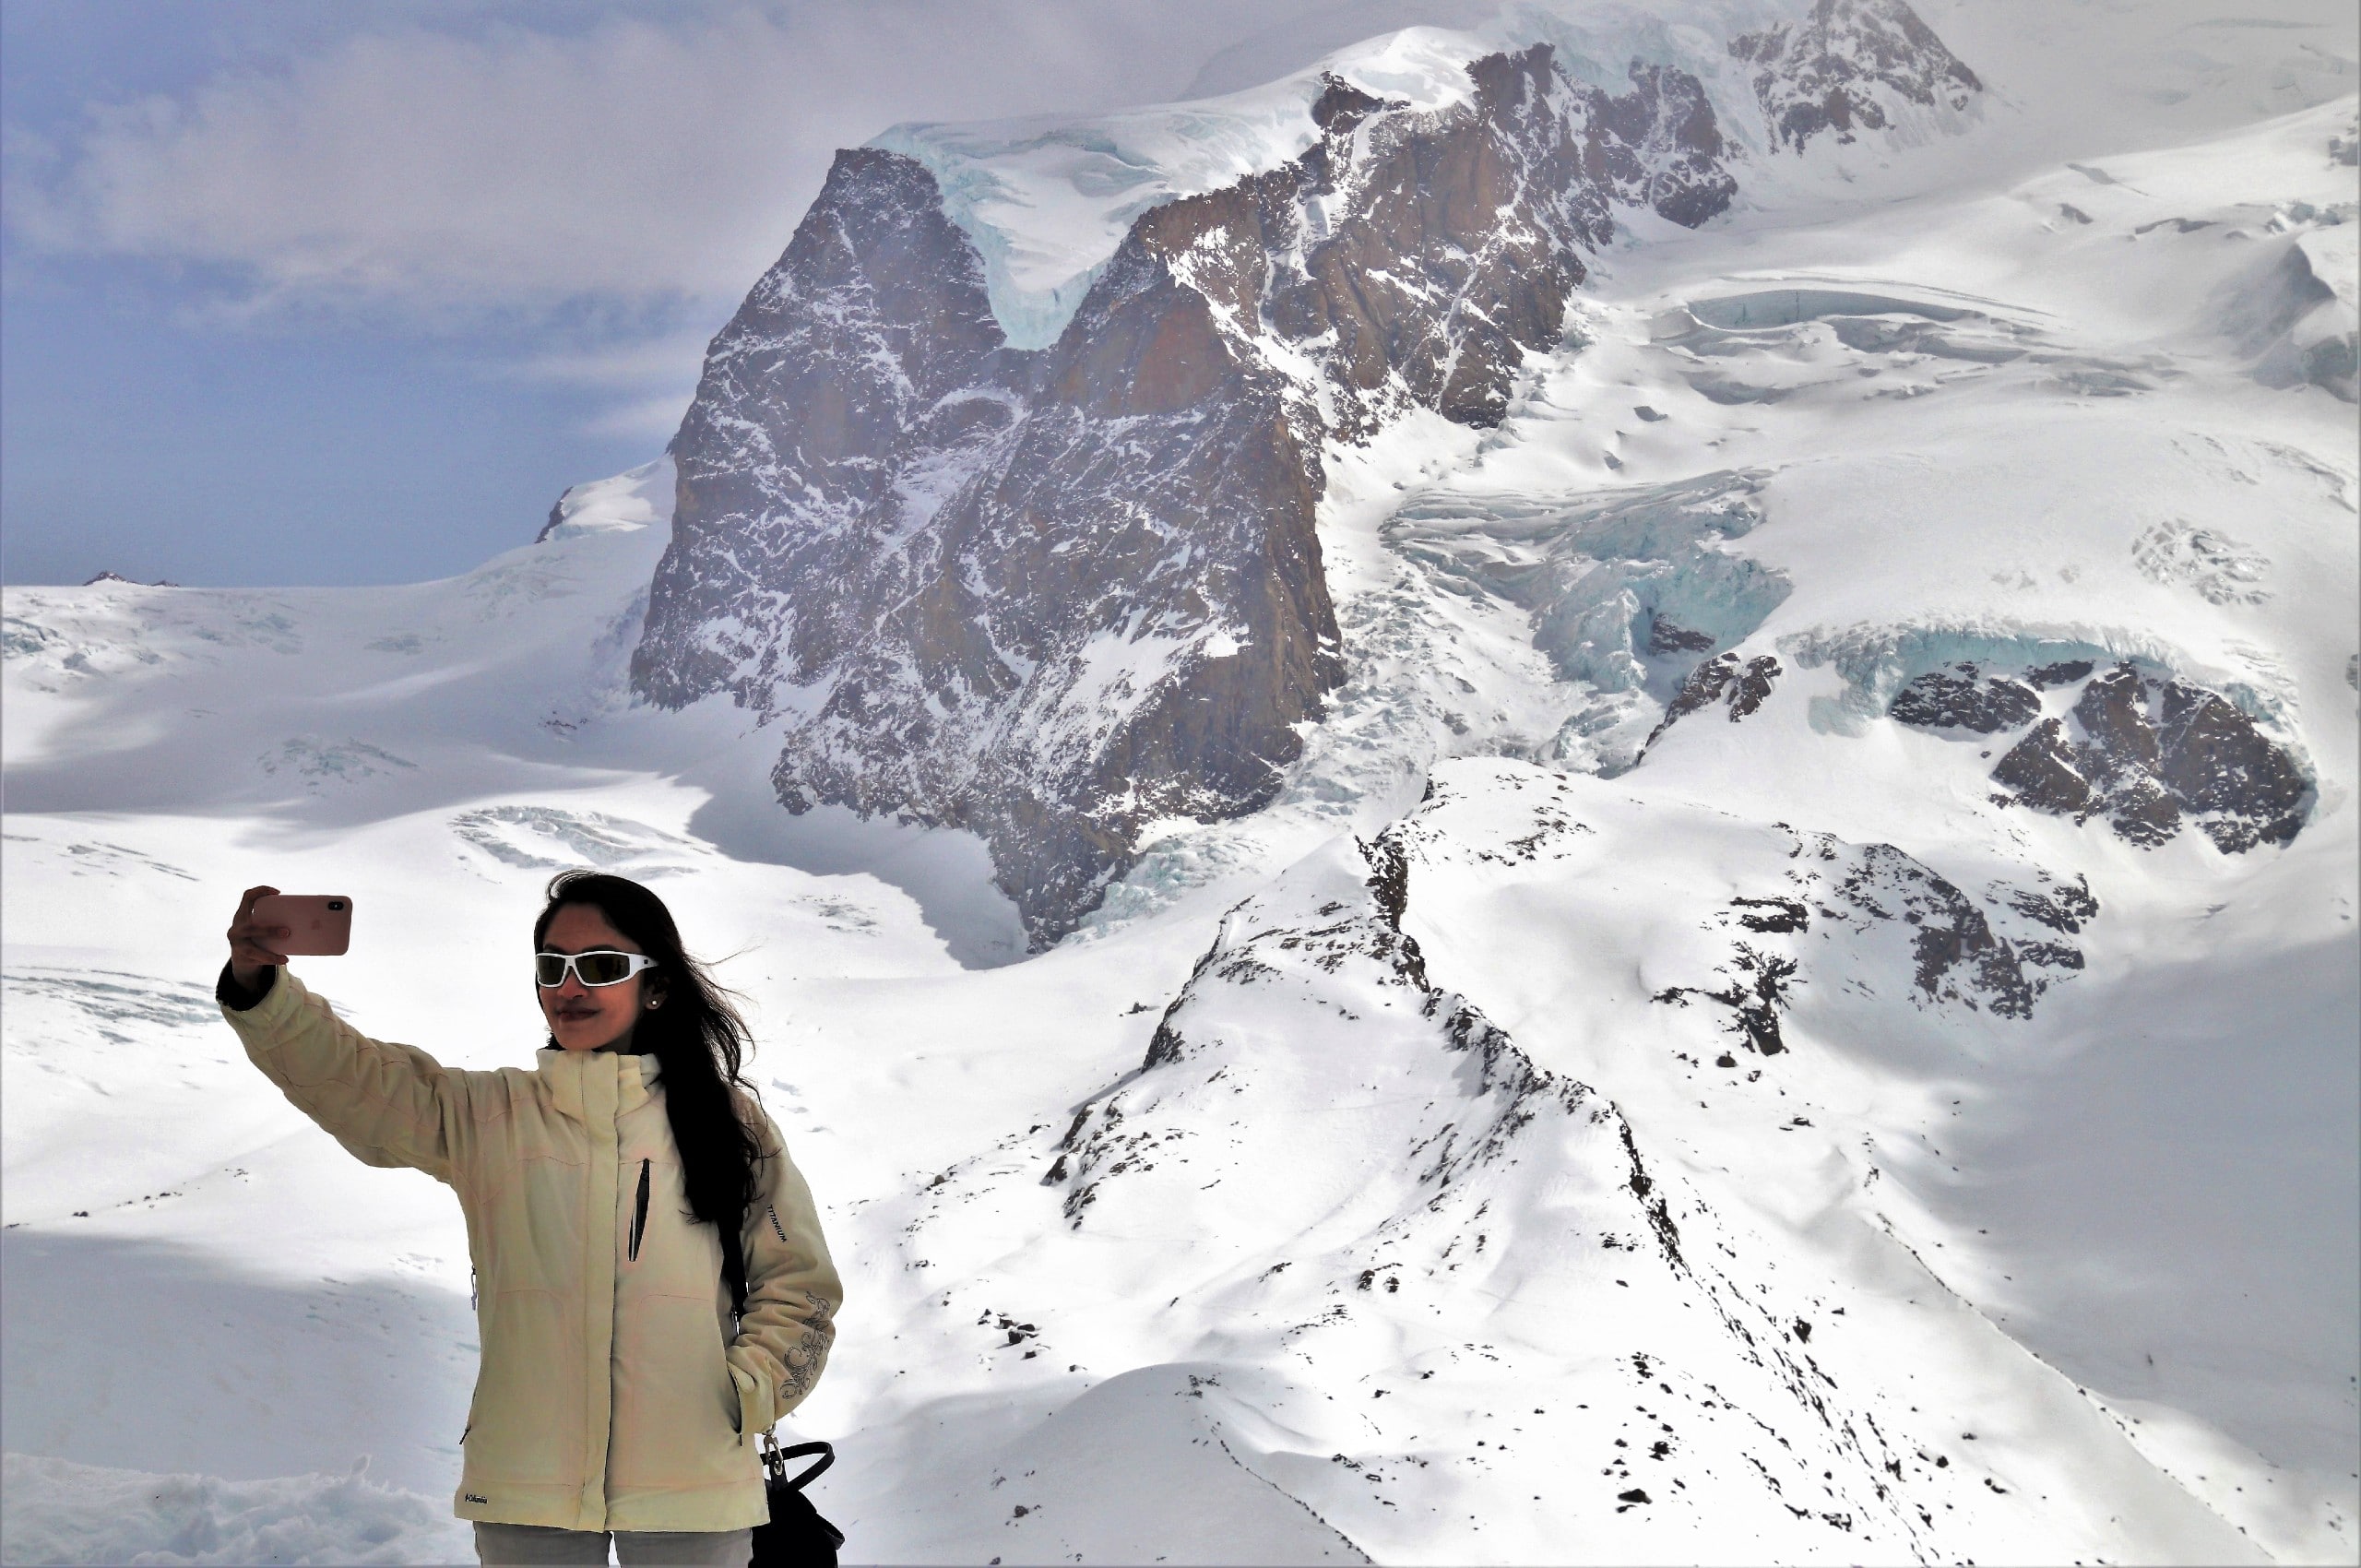 Lady taking a selfie near a snowy mountain range